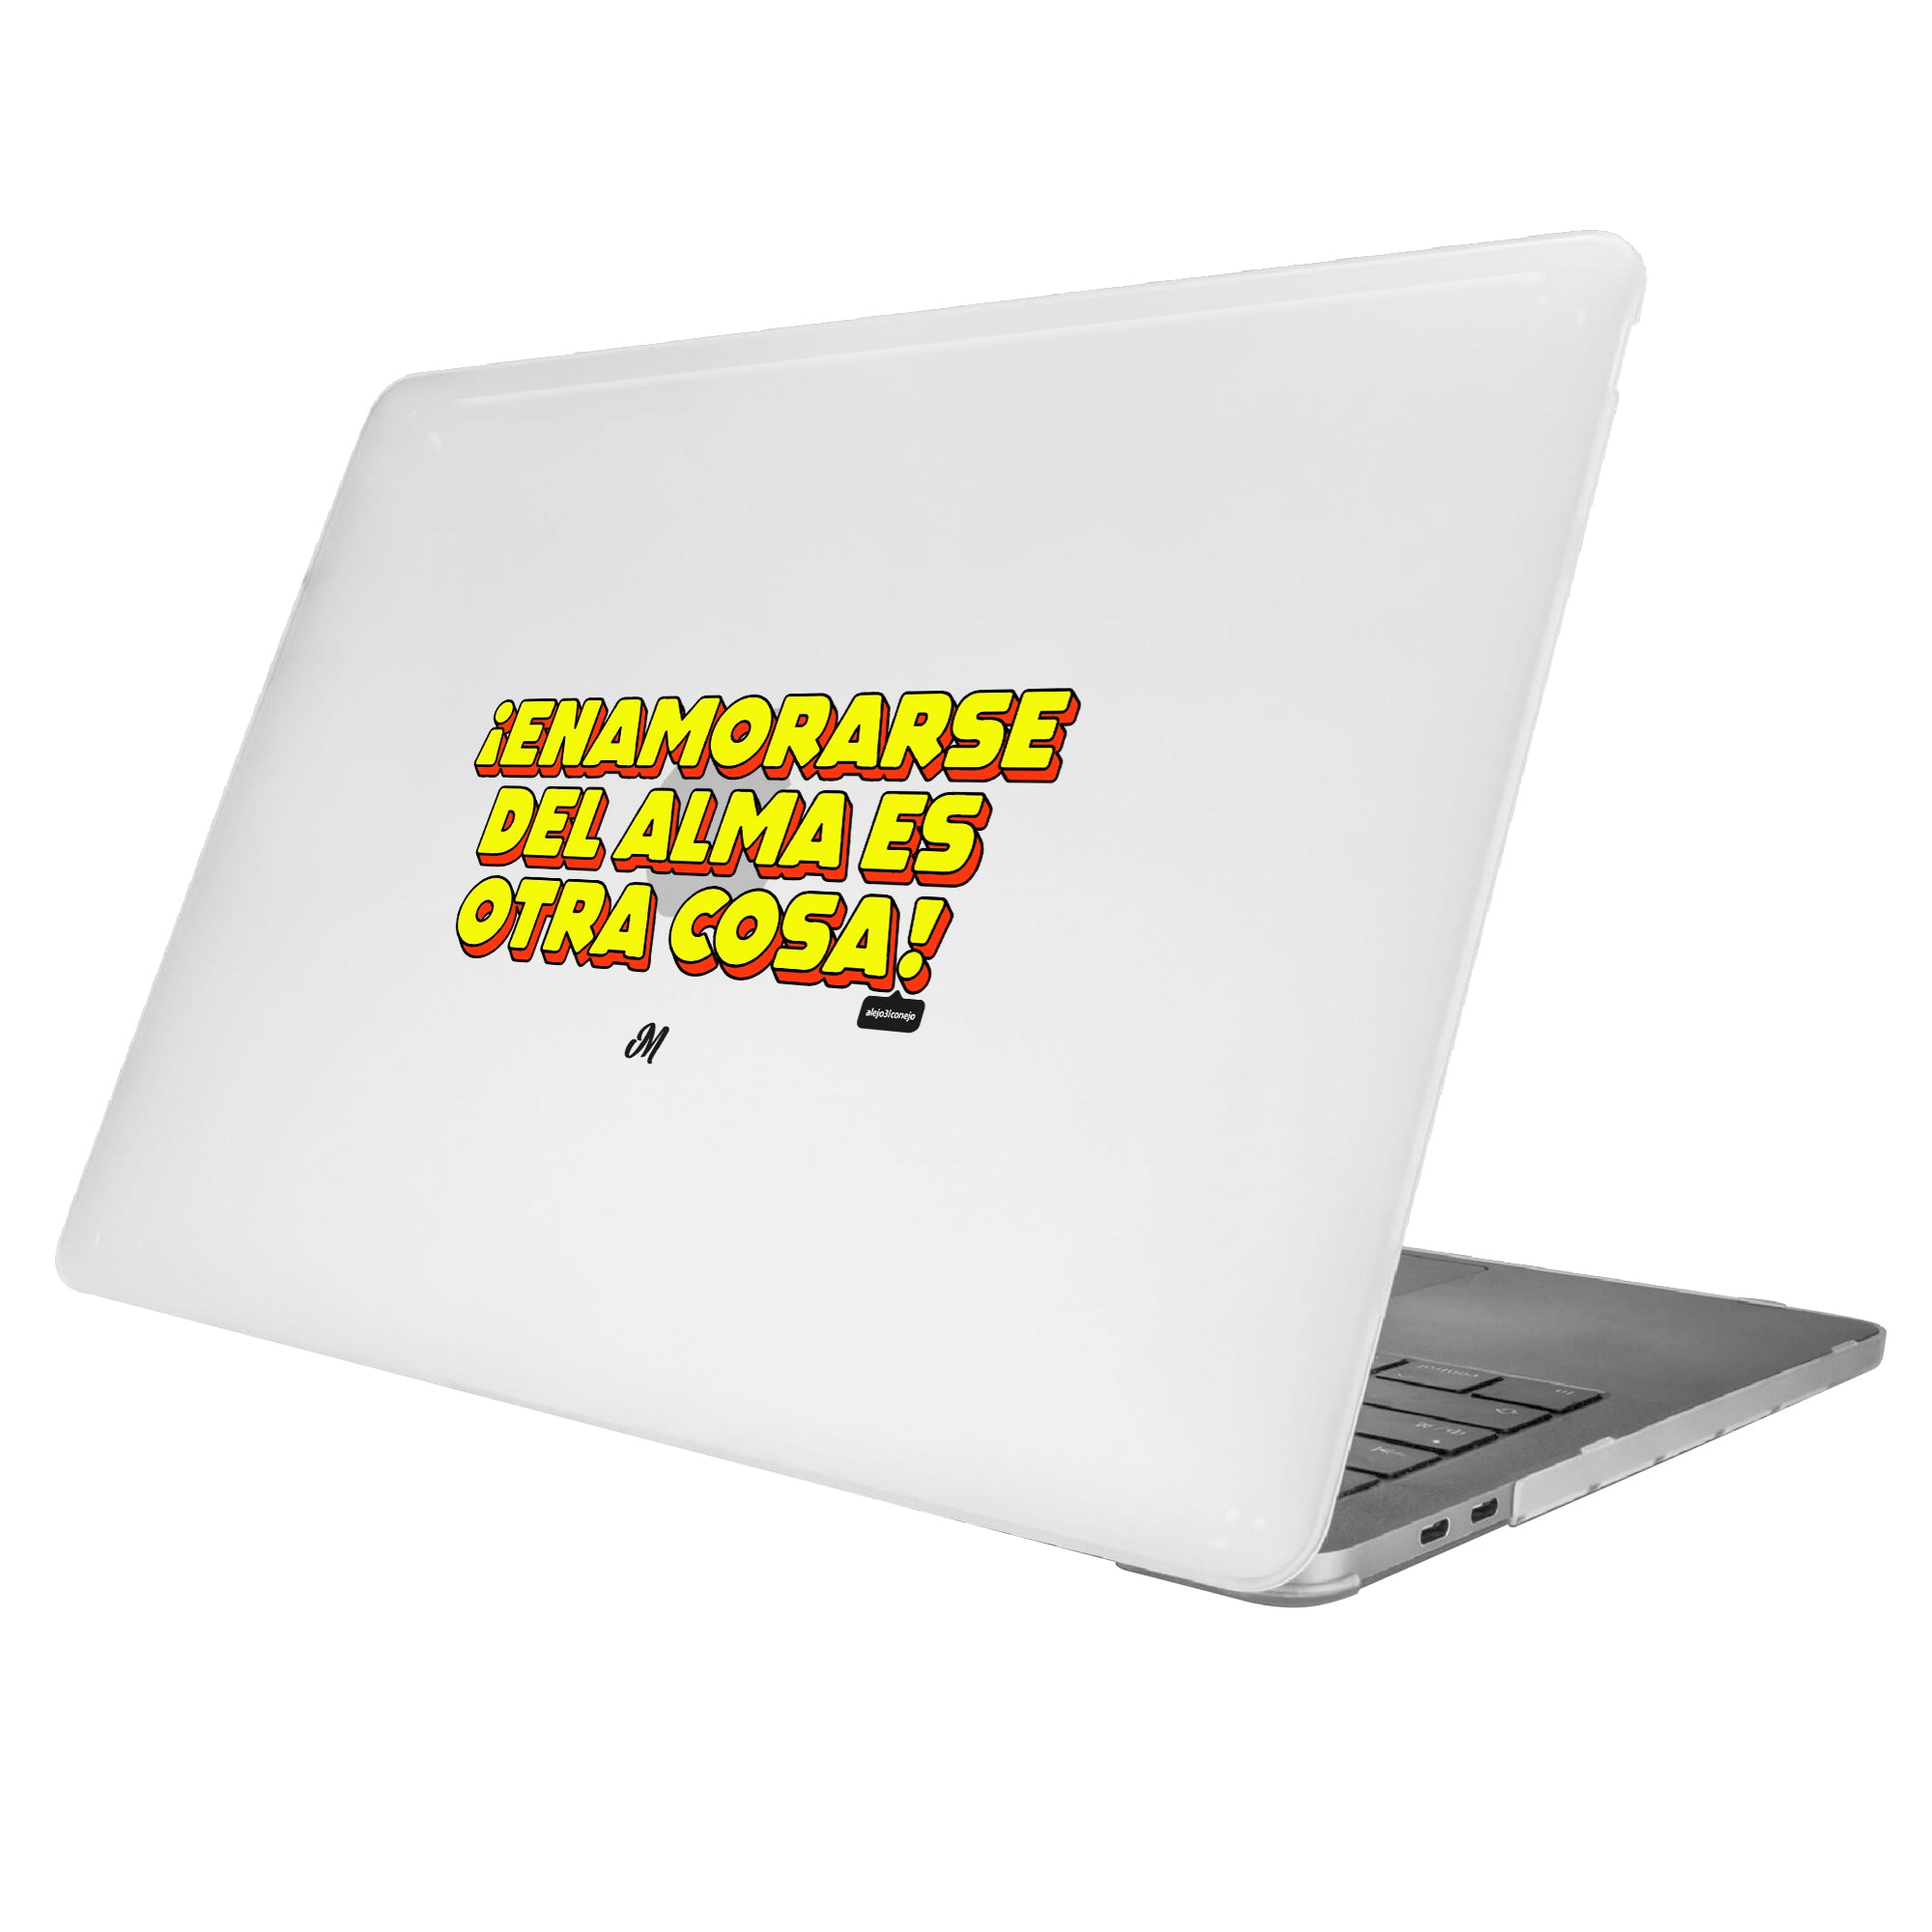 Una cosa sabrosa MacBook Case - Mandala Cases